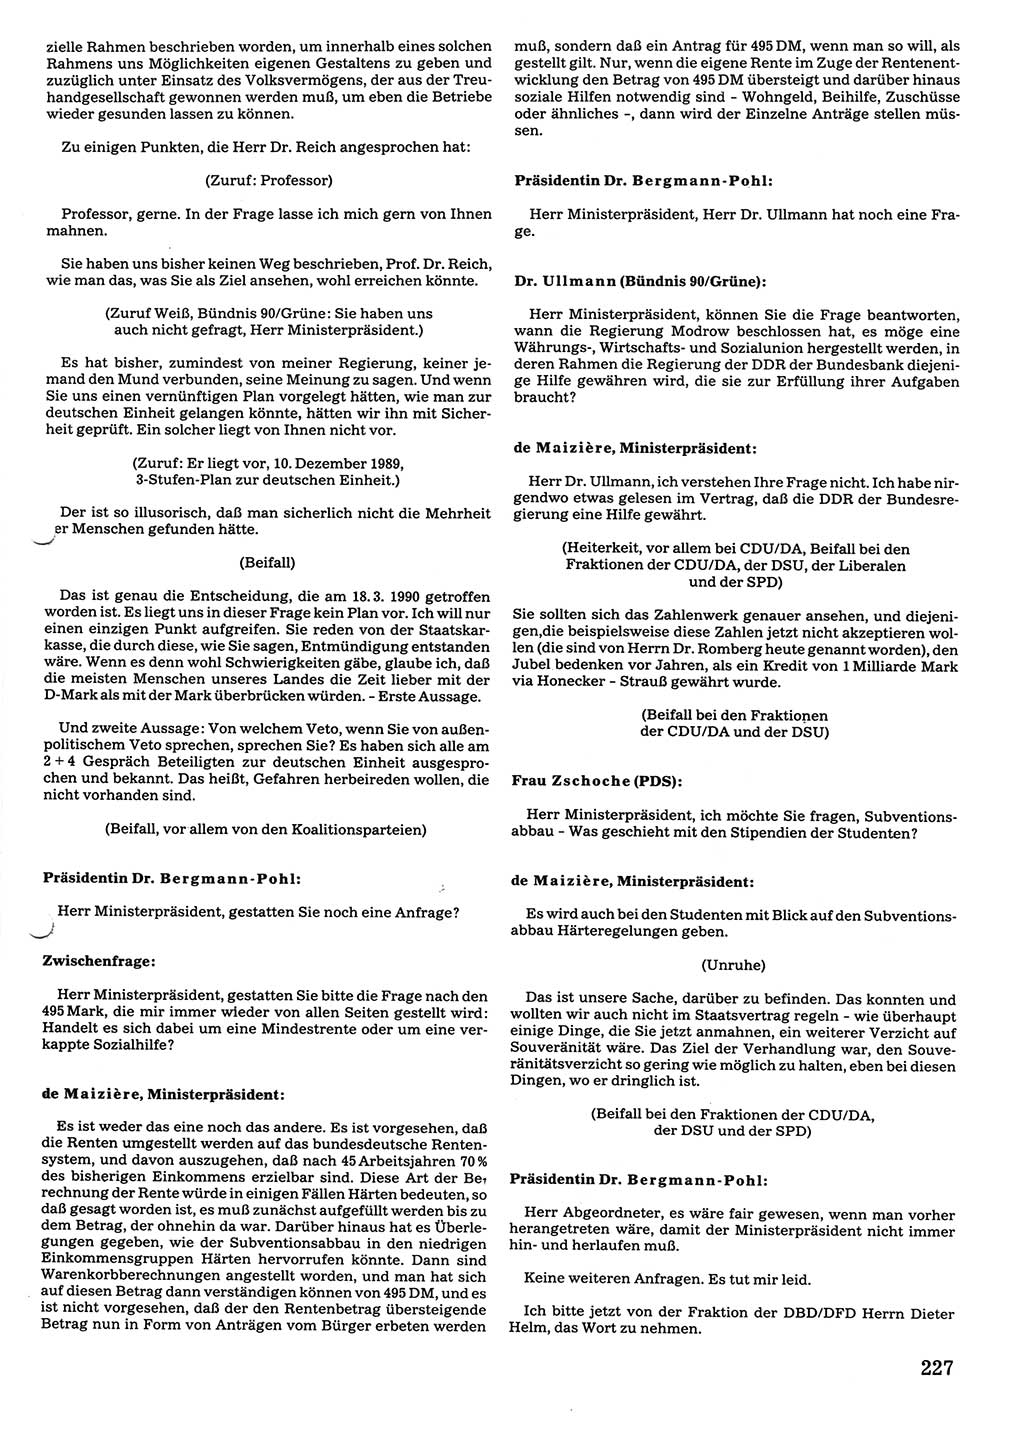 Tagungen der Volkskammer (VK) der Deutschen Demokratischen Republik (DDR), 10. Wahlperiode 1990, Seite 227 (VK. DDR 10. WP. 1990, Prot. Tg. 1-38, 5.4.-2.10.1990, S. 227)